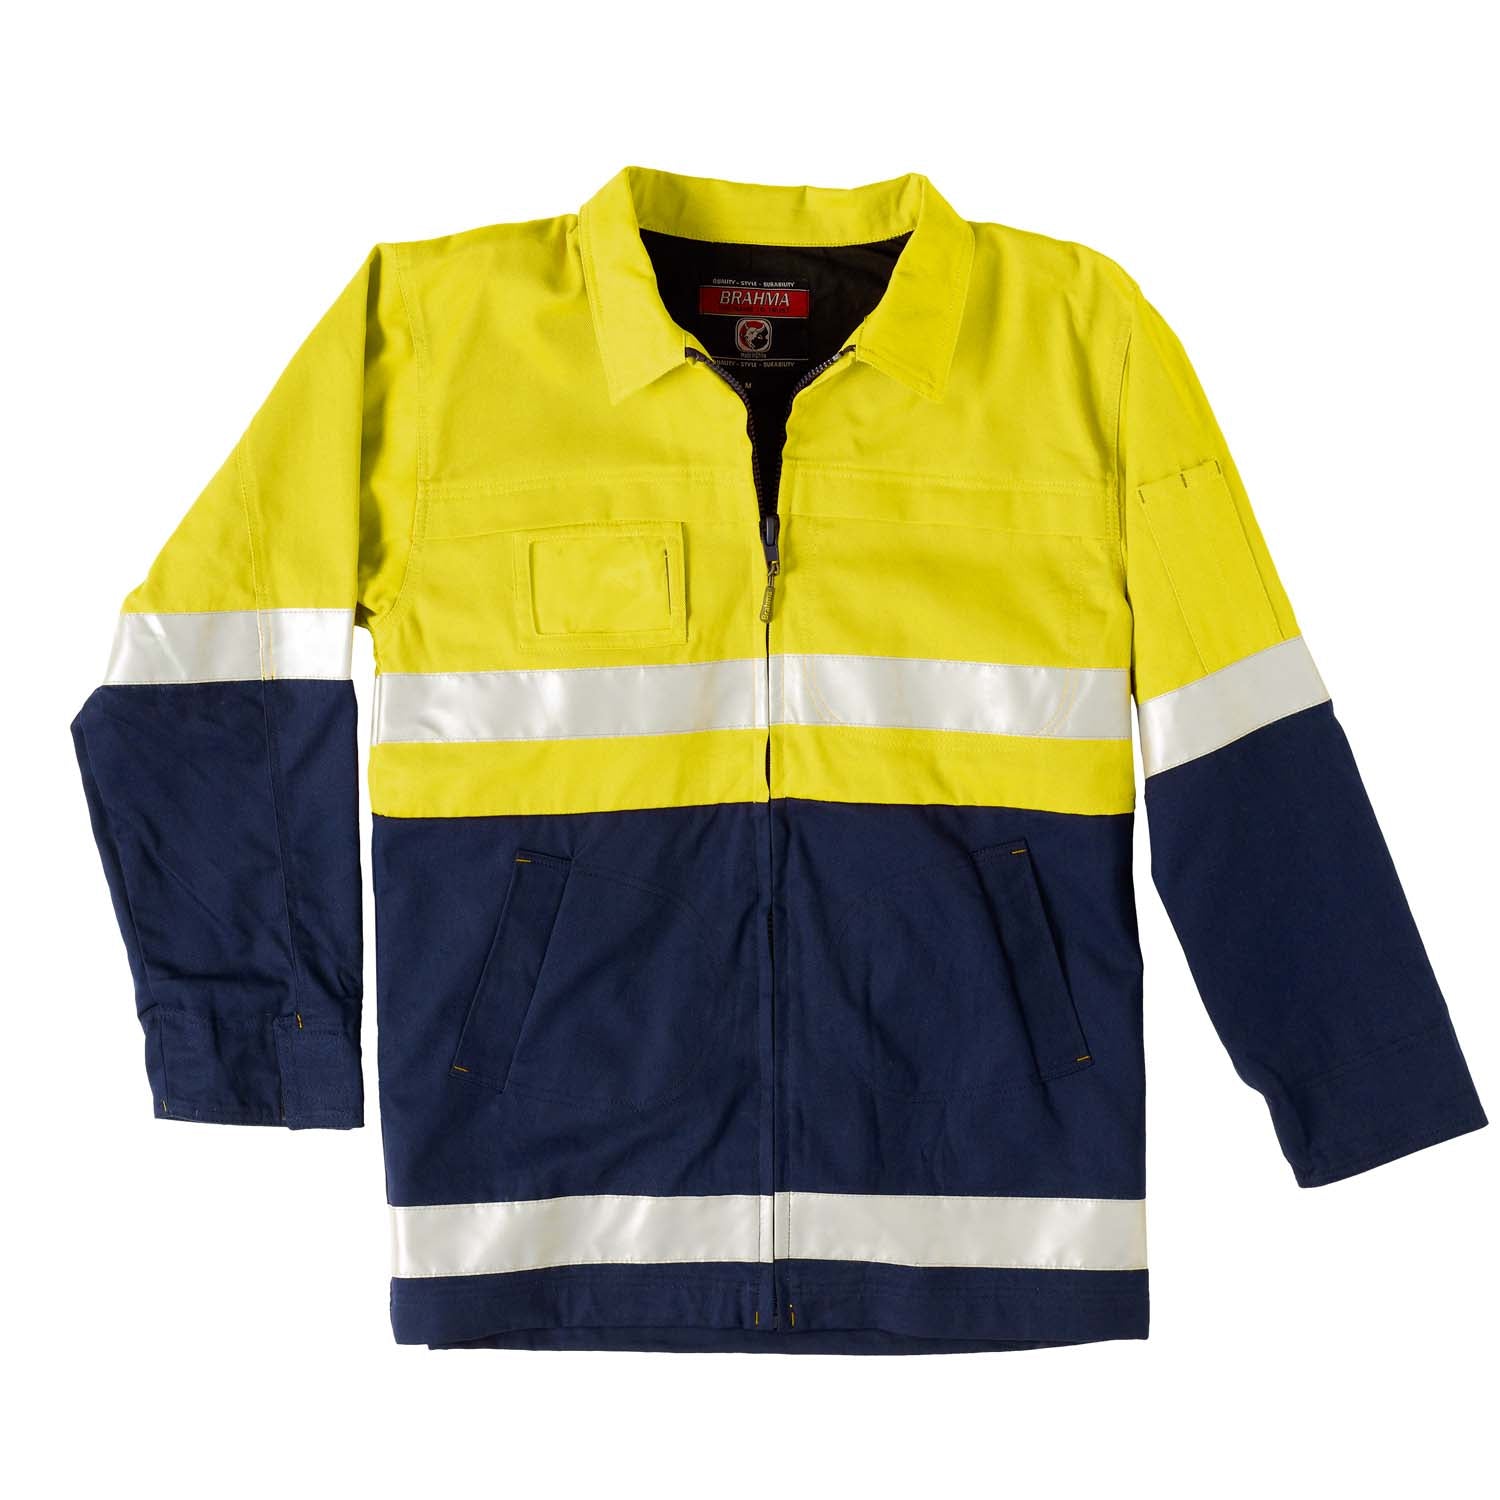 Jubilee Cotton Safety Jacket - Brahma Industrial Workwear